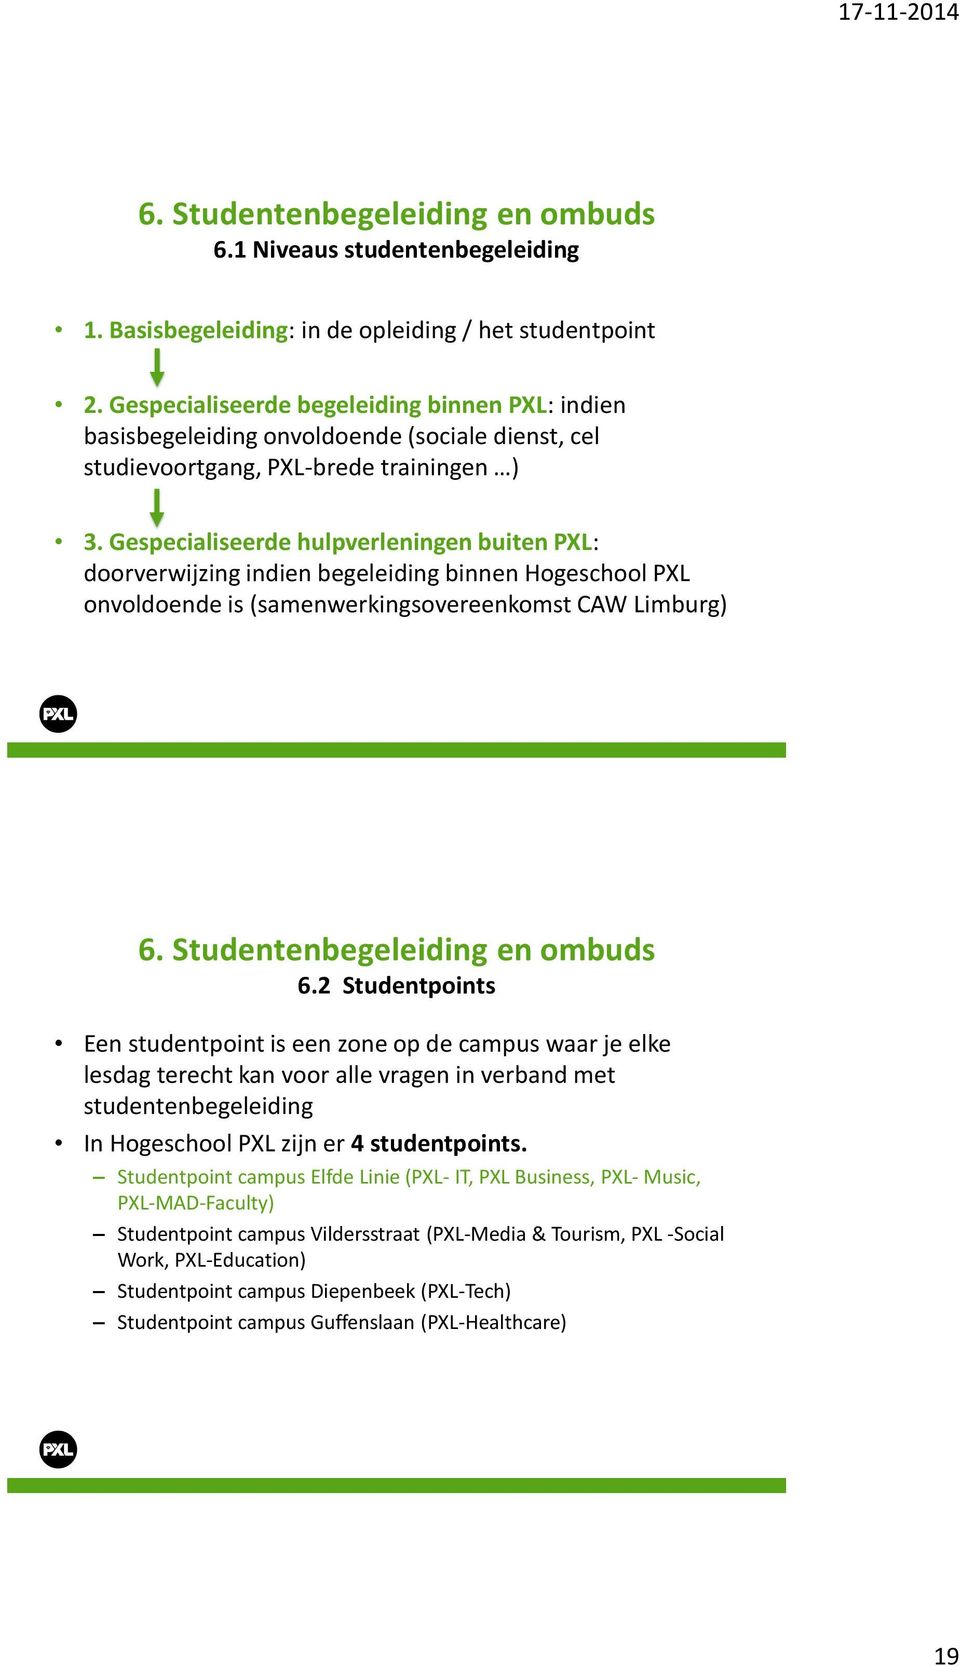 Gespecialiseerde hulpverleningen buiten PXL: doorverwijzing indien begeleiding binnen Hogeschool PXL onvoldoende is (samenwerkingsovereenkomst CAW Limburg) 6.